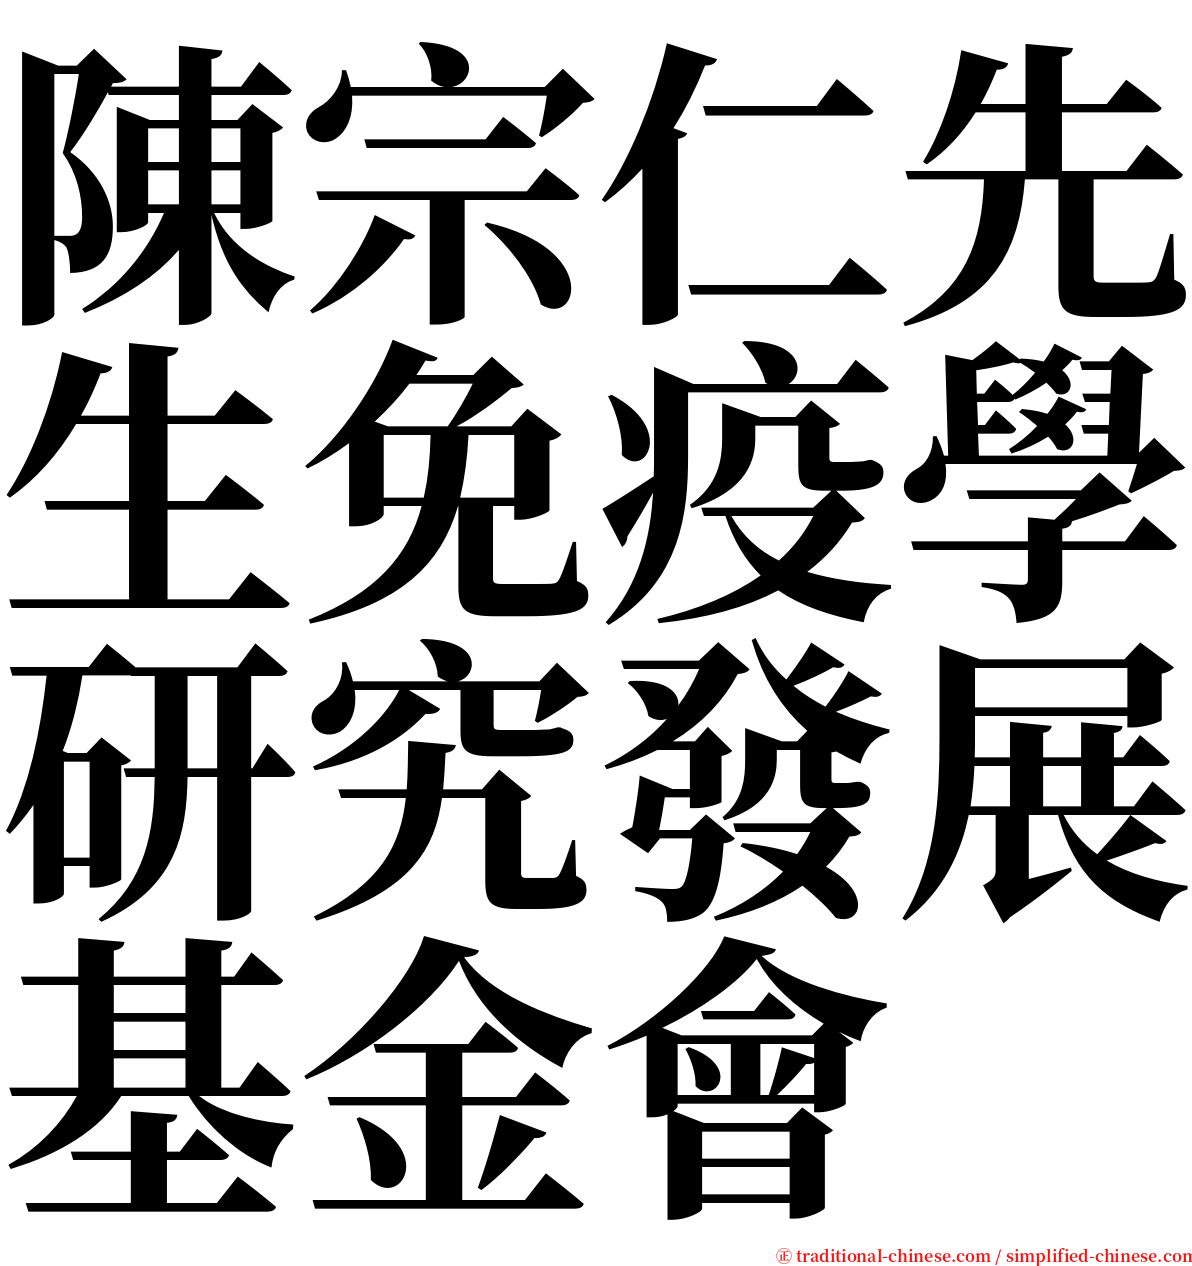 陳宗仁先生免疫學研究發展基金會 serif font